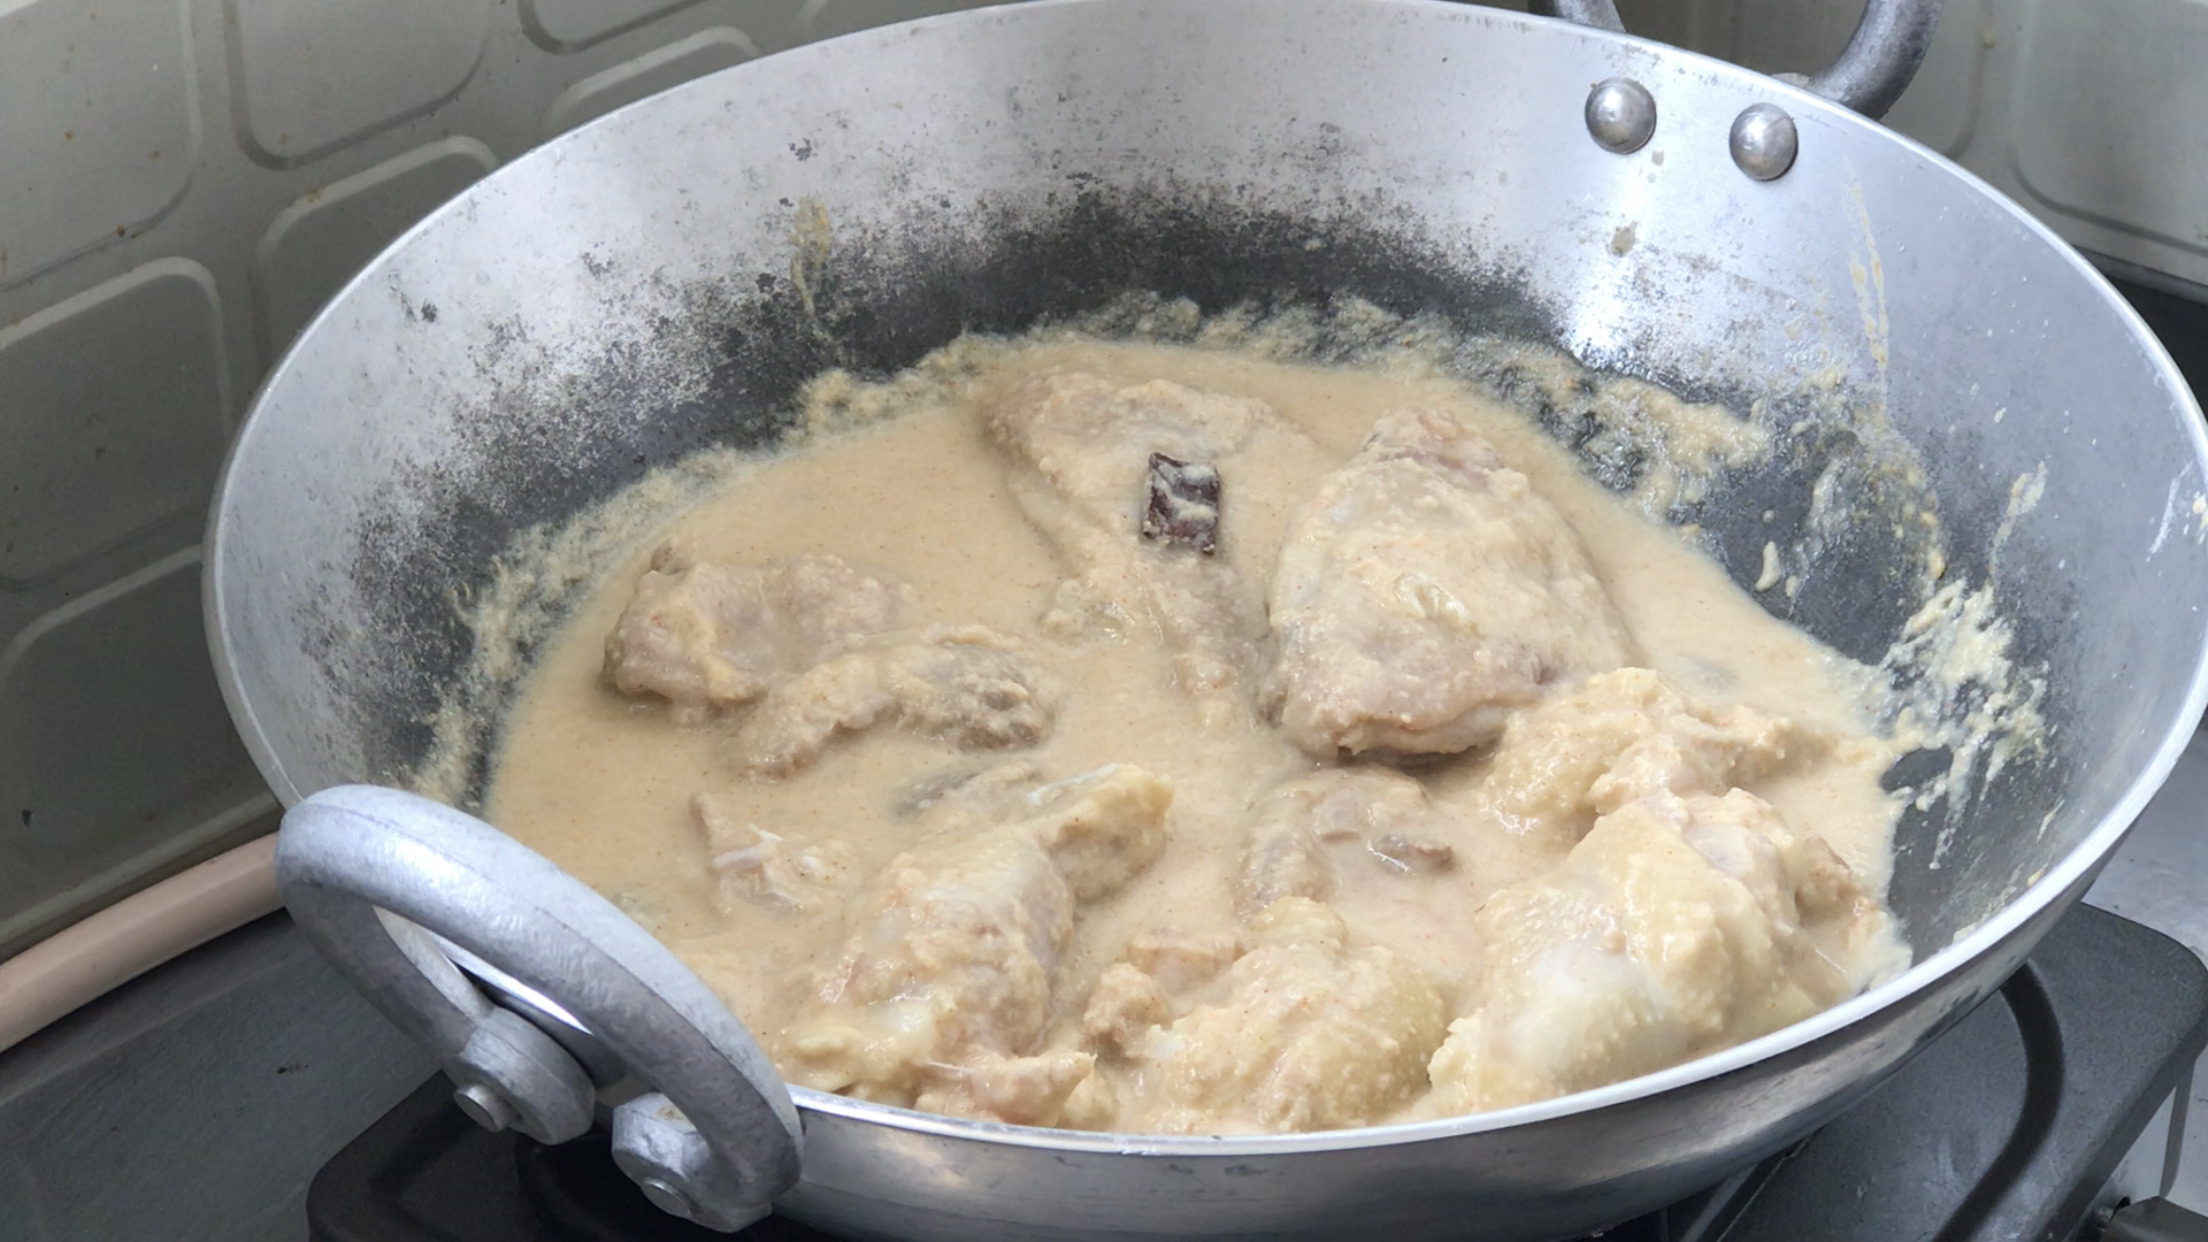 インド料理レシピ チキン シャージャハーニー 白いチキンカレー おいしいウソをついて インドカレーのレシピ公開中